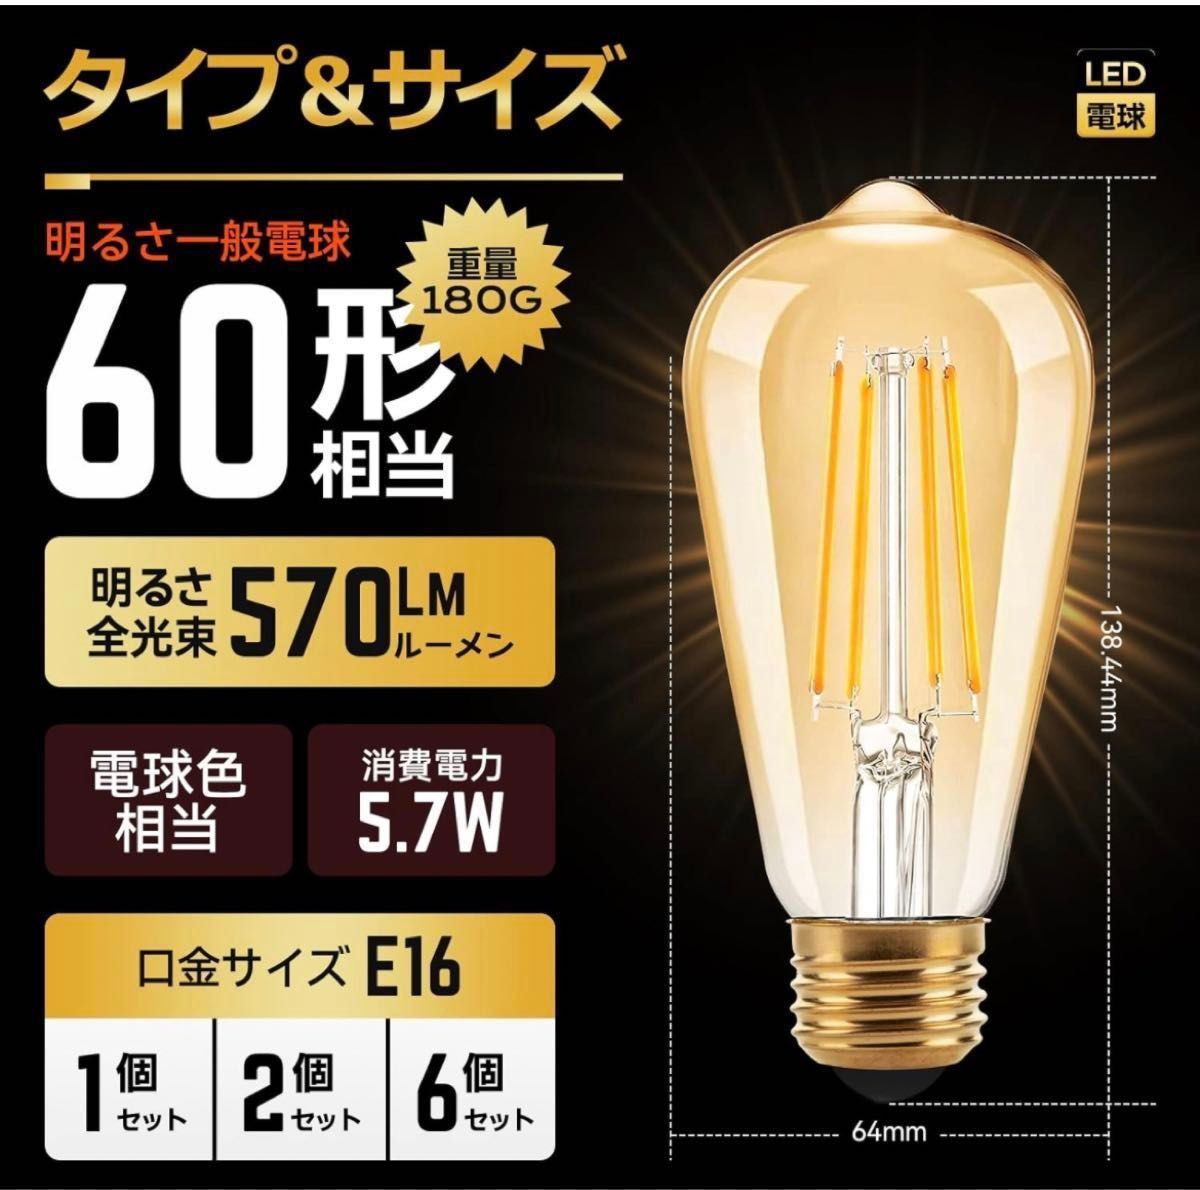 フィラメント電球 60W形相当 レトロ風 LED電球 密閉器具対応 5.7W E26口金 電球色 570lm エジソンランプ 